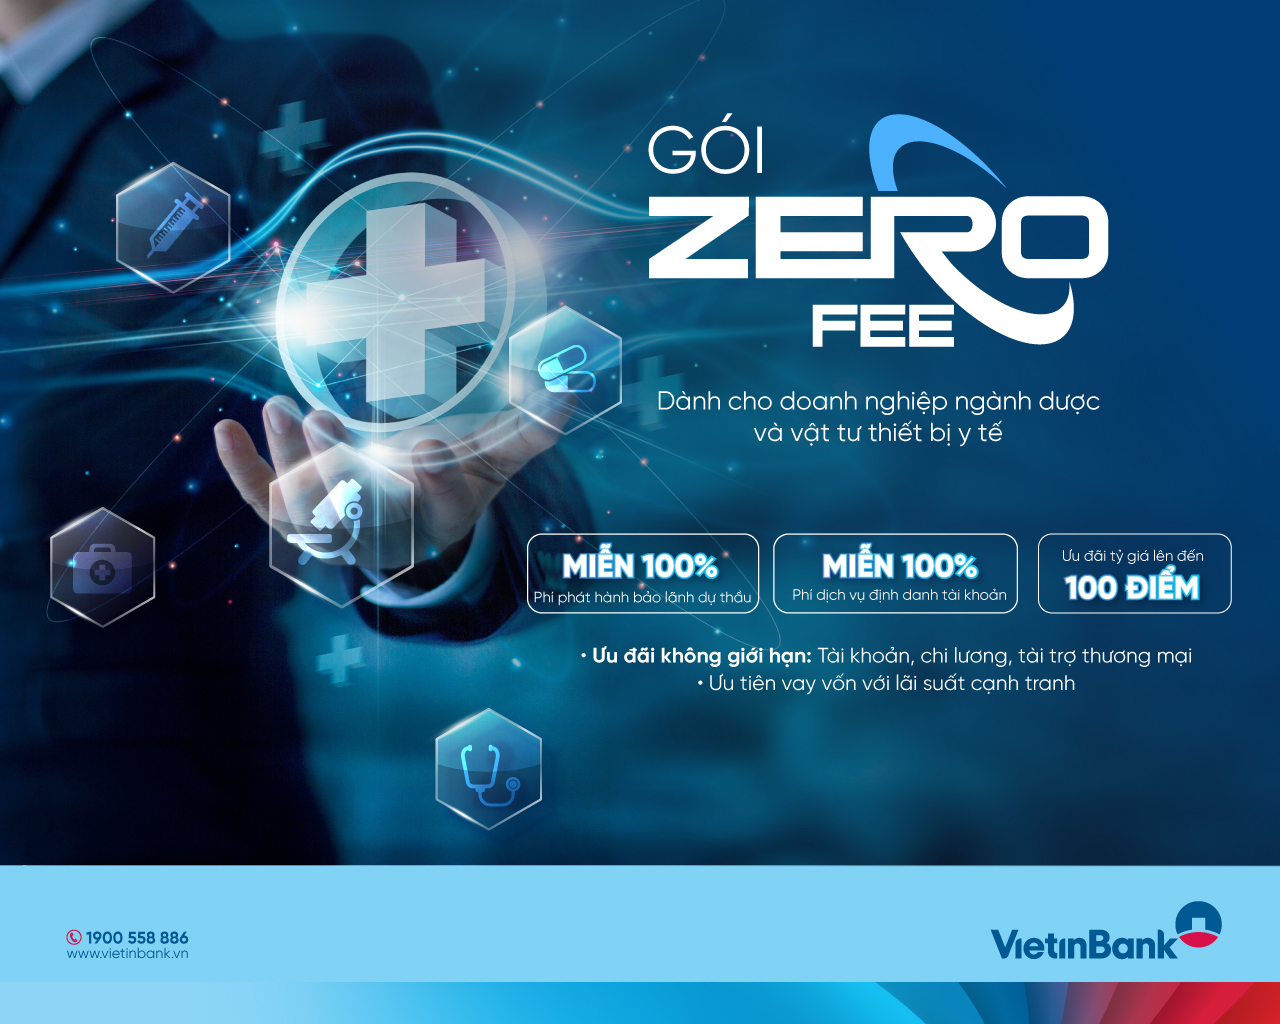 VietinBank tung gói ưu đãi phí “Zero Fee” dành cho doanh nghiệp ngành dược- Ảnh 1.